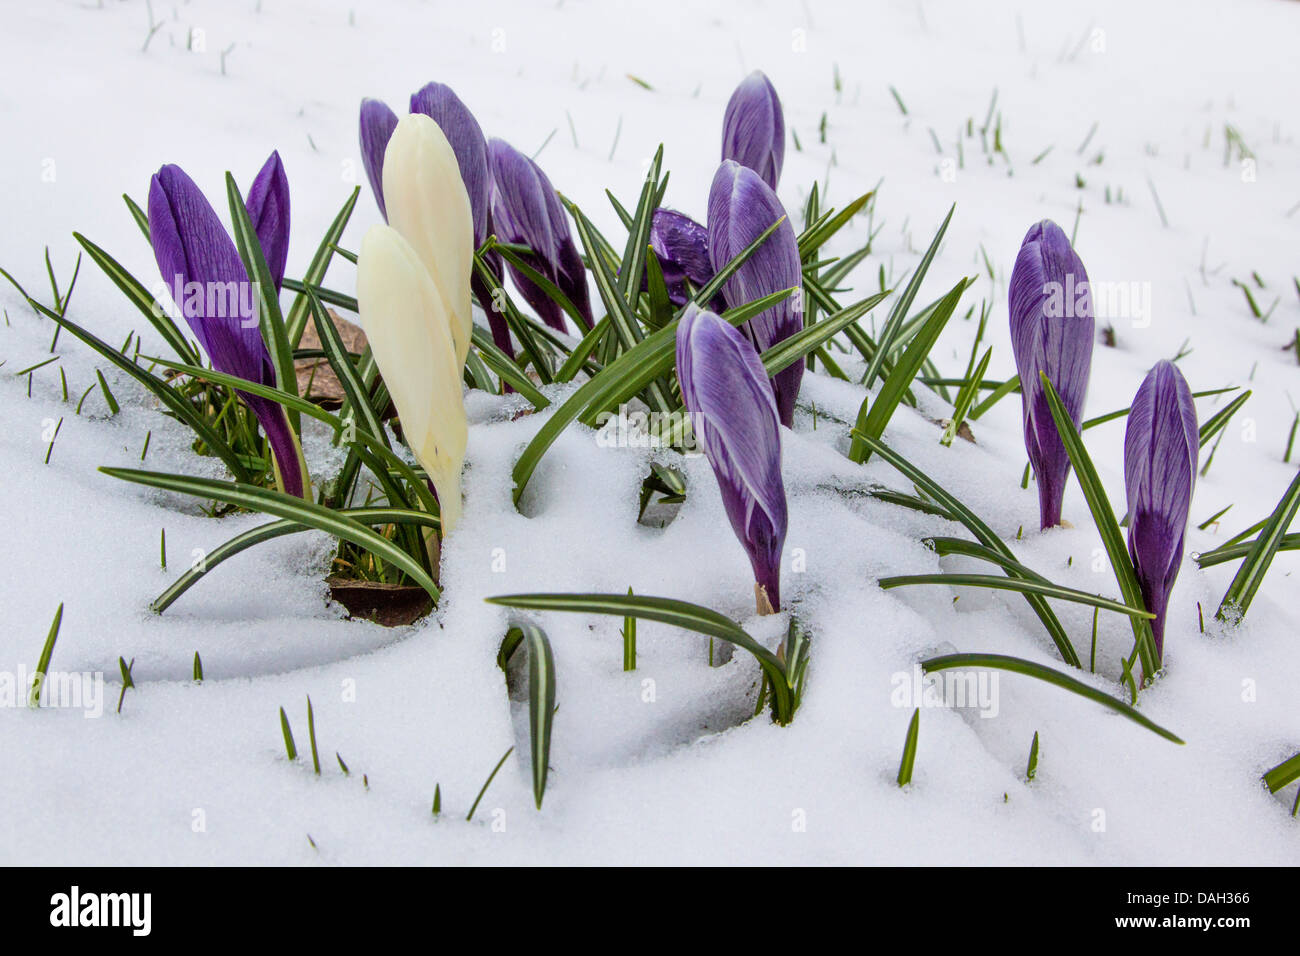 Crocus Crocus du printemps, néerlandais (Crocus vernus, Crocus neapolitanus), fleurir dans la neige, Allemagne Banque D'Images